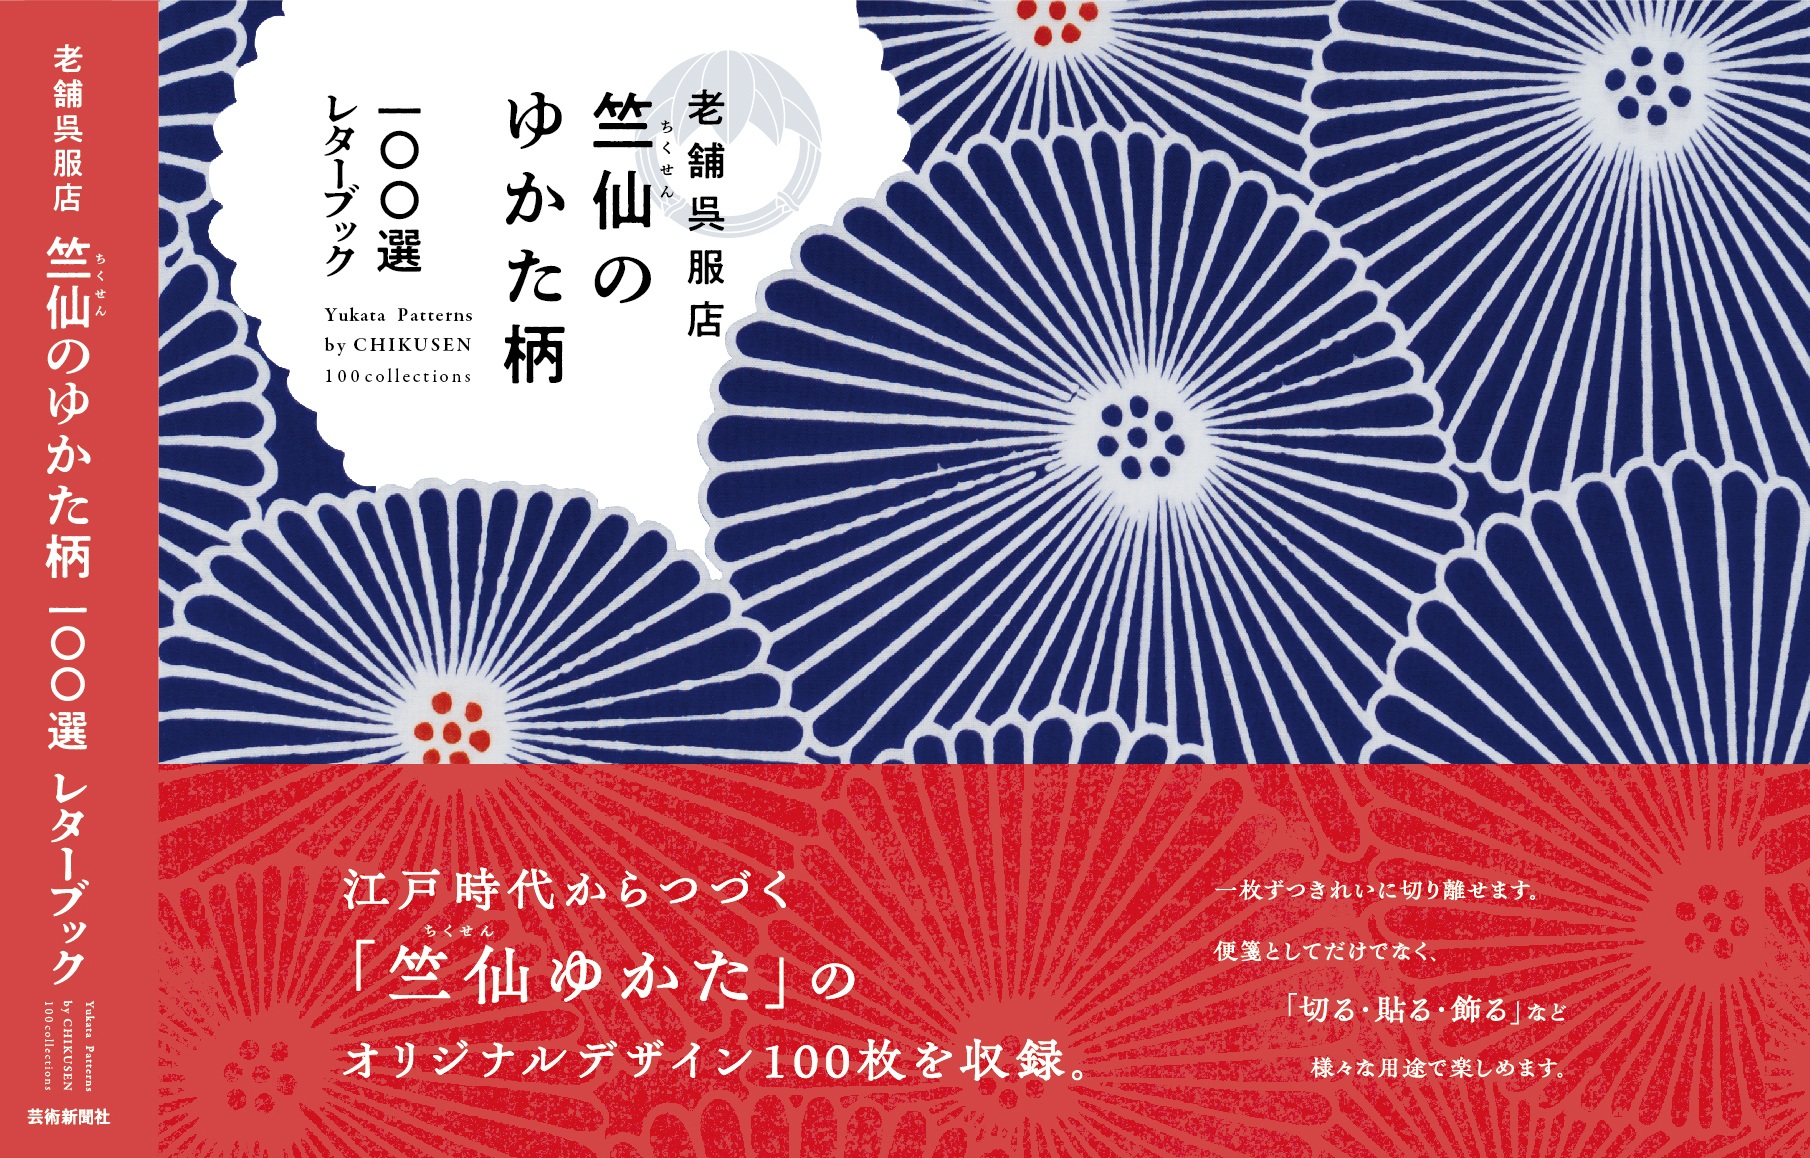 ニューズウィーク日本版で『竺仙レターブック』が紹介されました